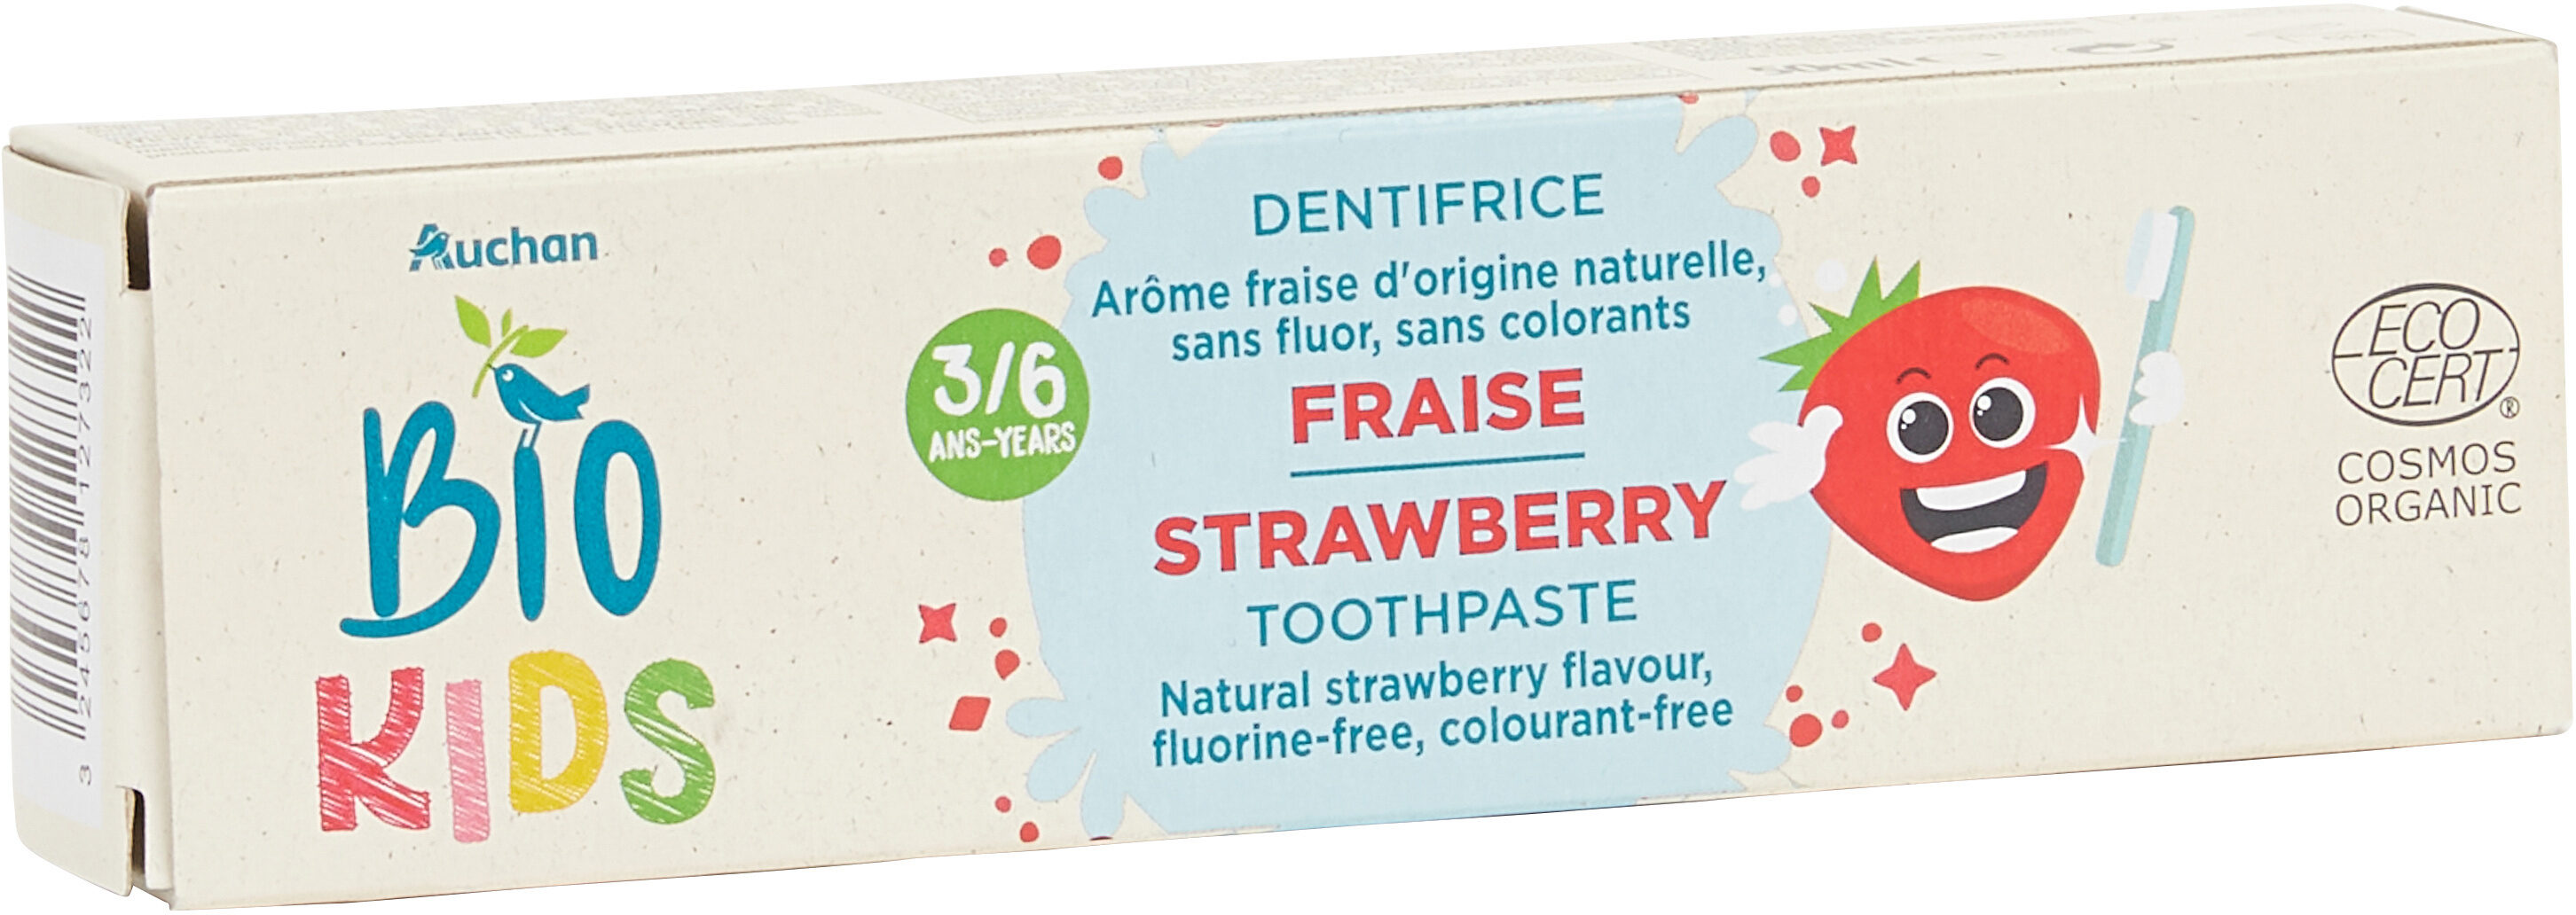 Auchan bio dentifrice enfants 3-6 ans fraise - Produit - fr